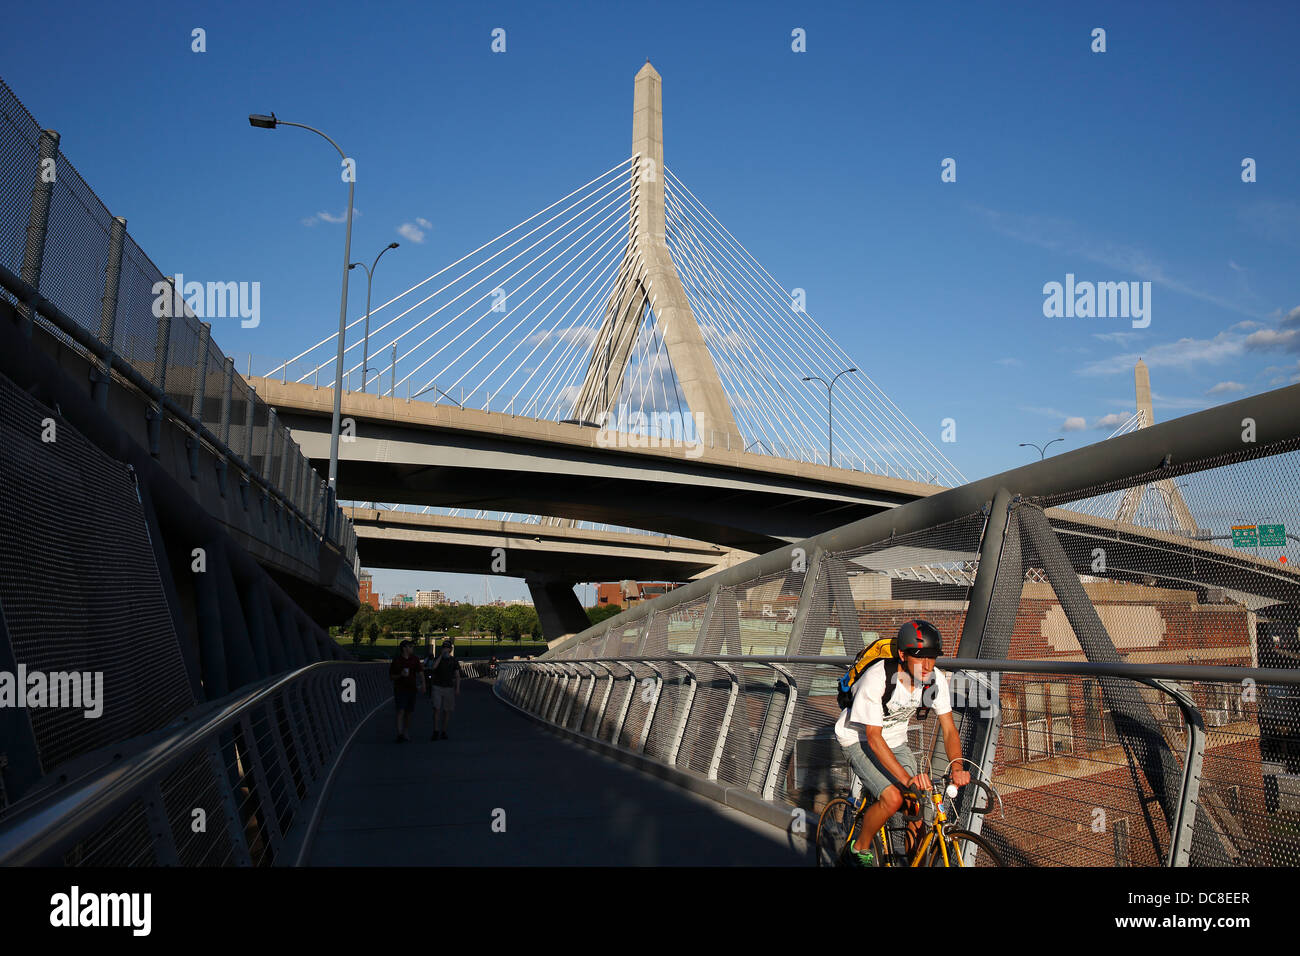 Leonard P. Zakim Bunker Hill Bridge over the Charles River in Boston, Massachusetts Stock Photo